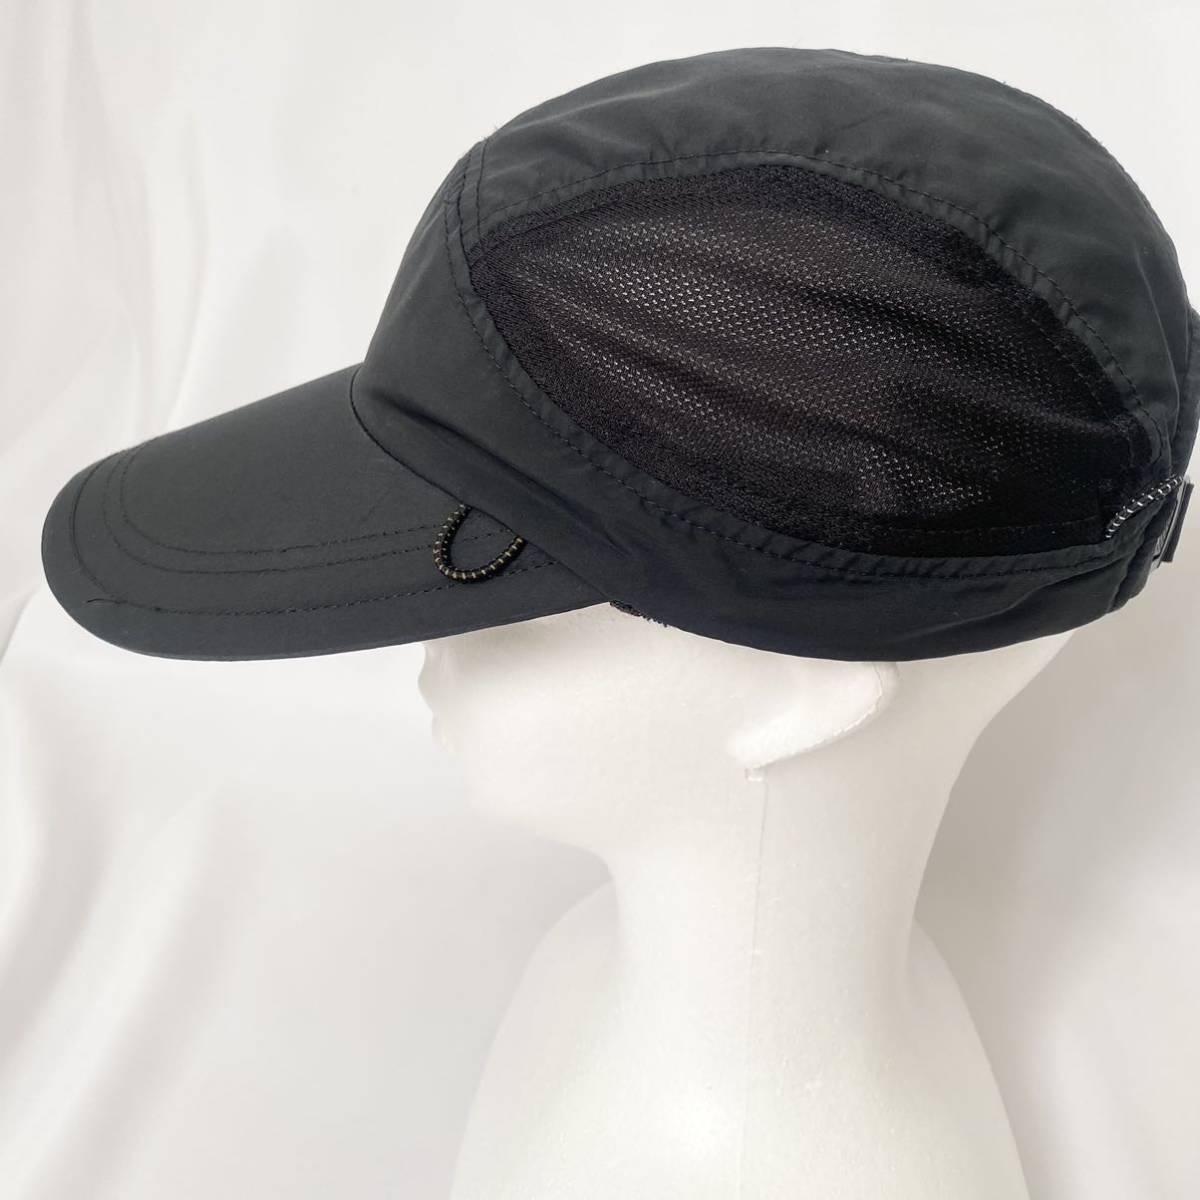  хорошая вещь * THE NORTH FACE North Face колпак шляпа сетка чёрный черный свободный размер бег ходьба спорт 